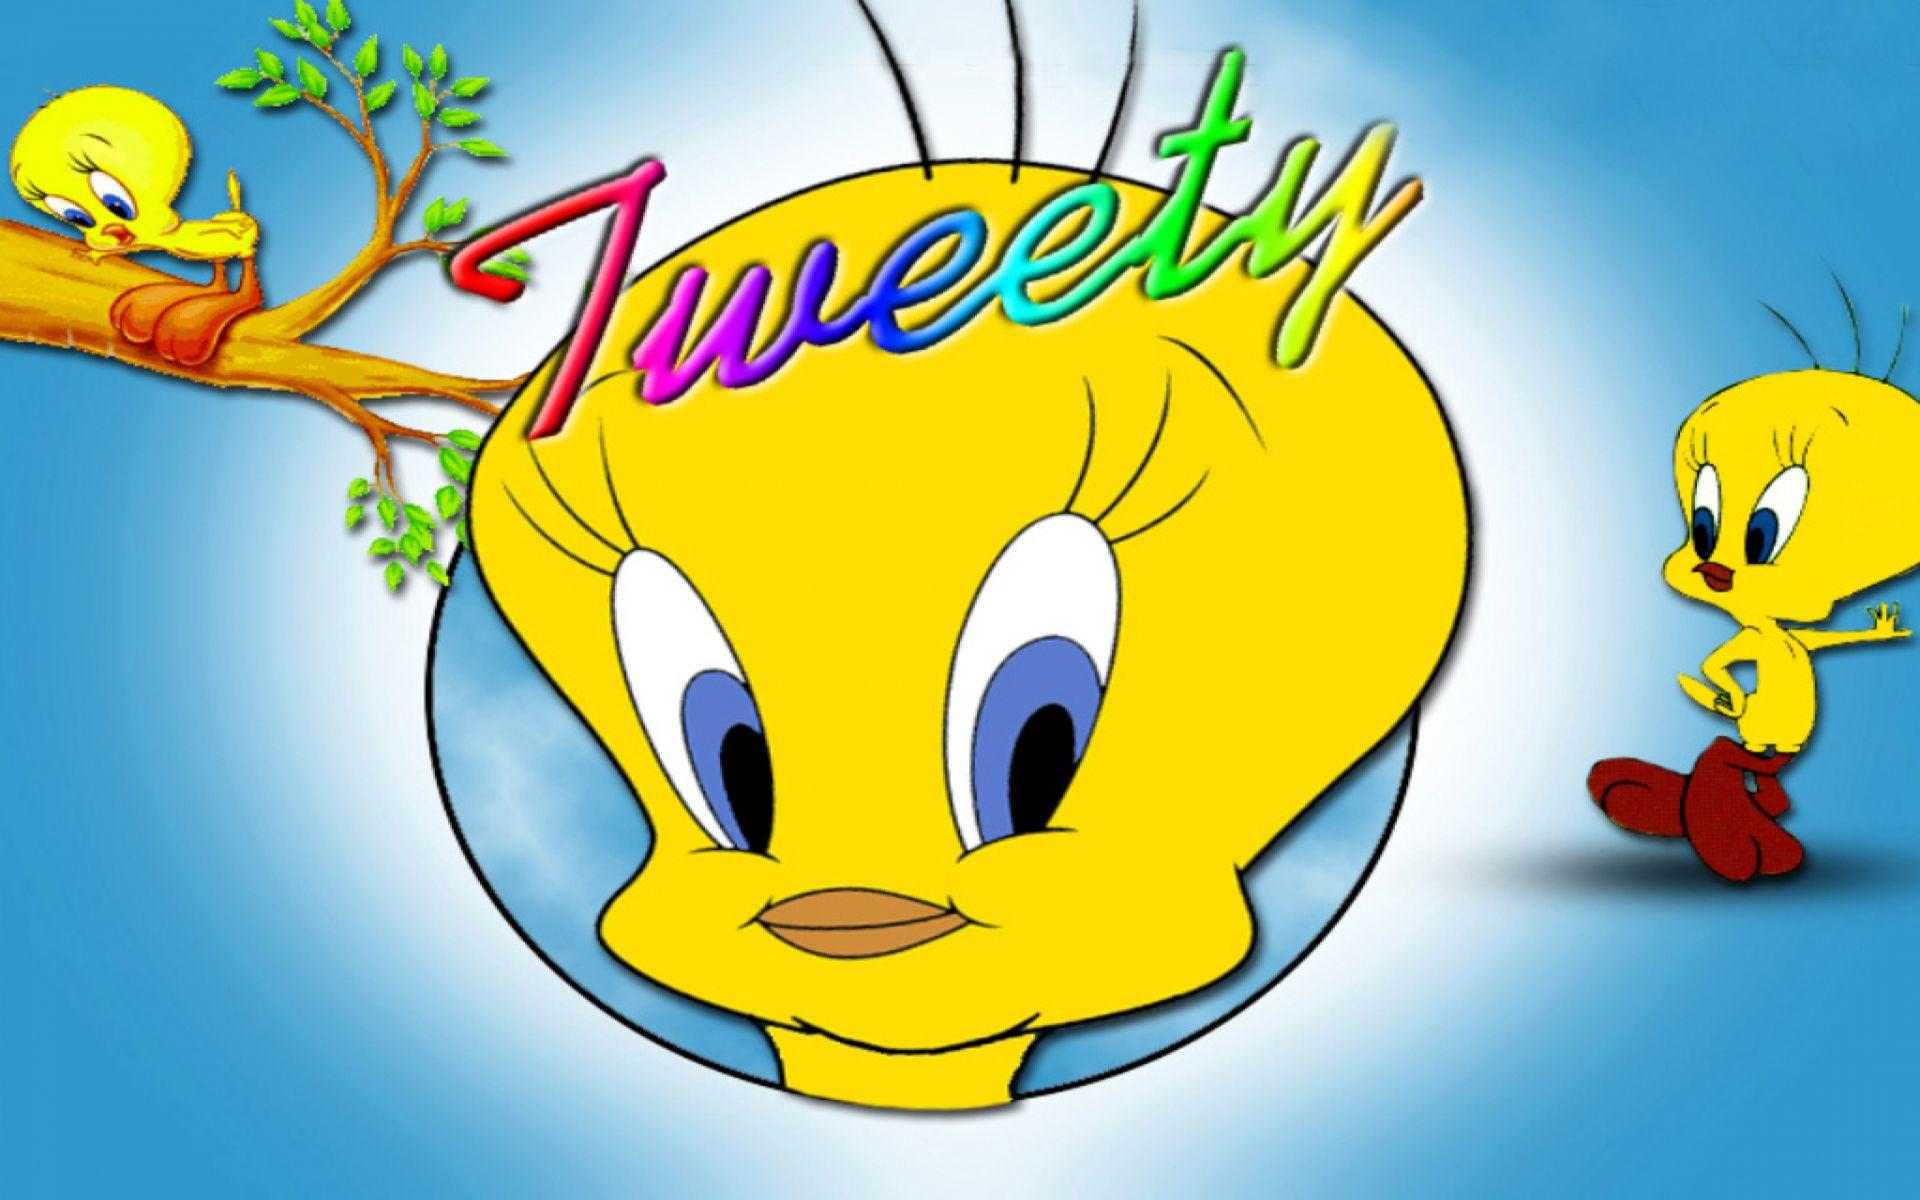 Tweety Bird Cartoon HD Wallpaper For Mobile Phones Tablet